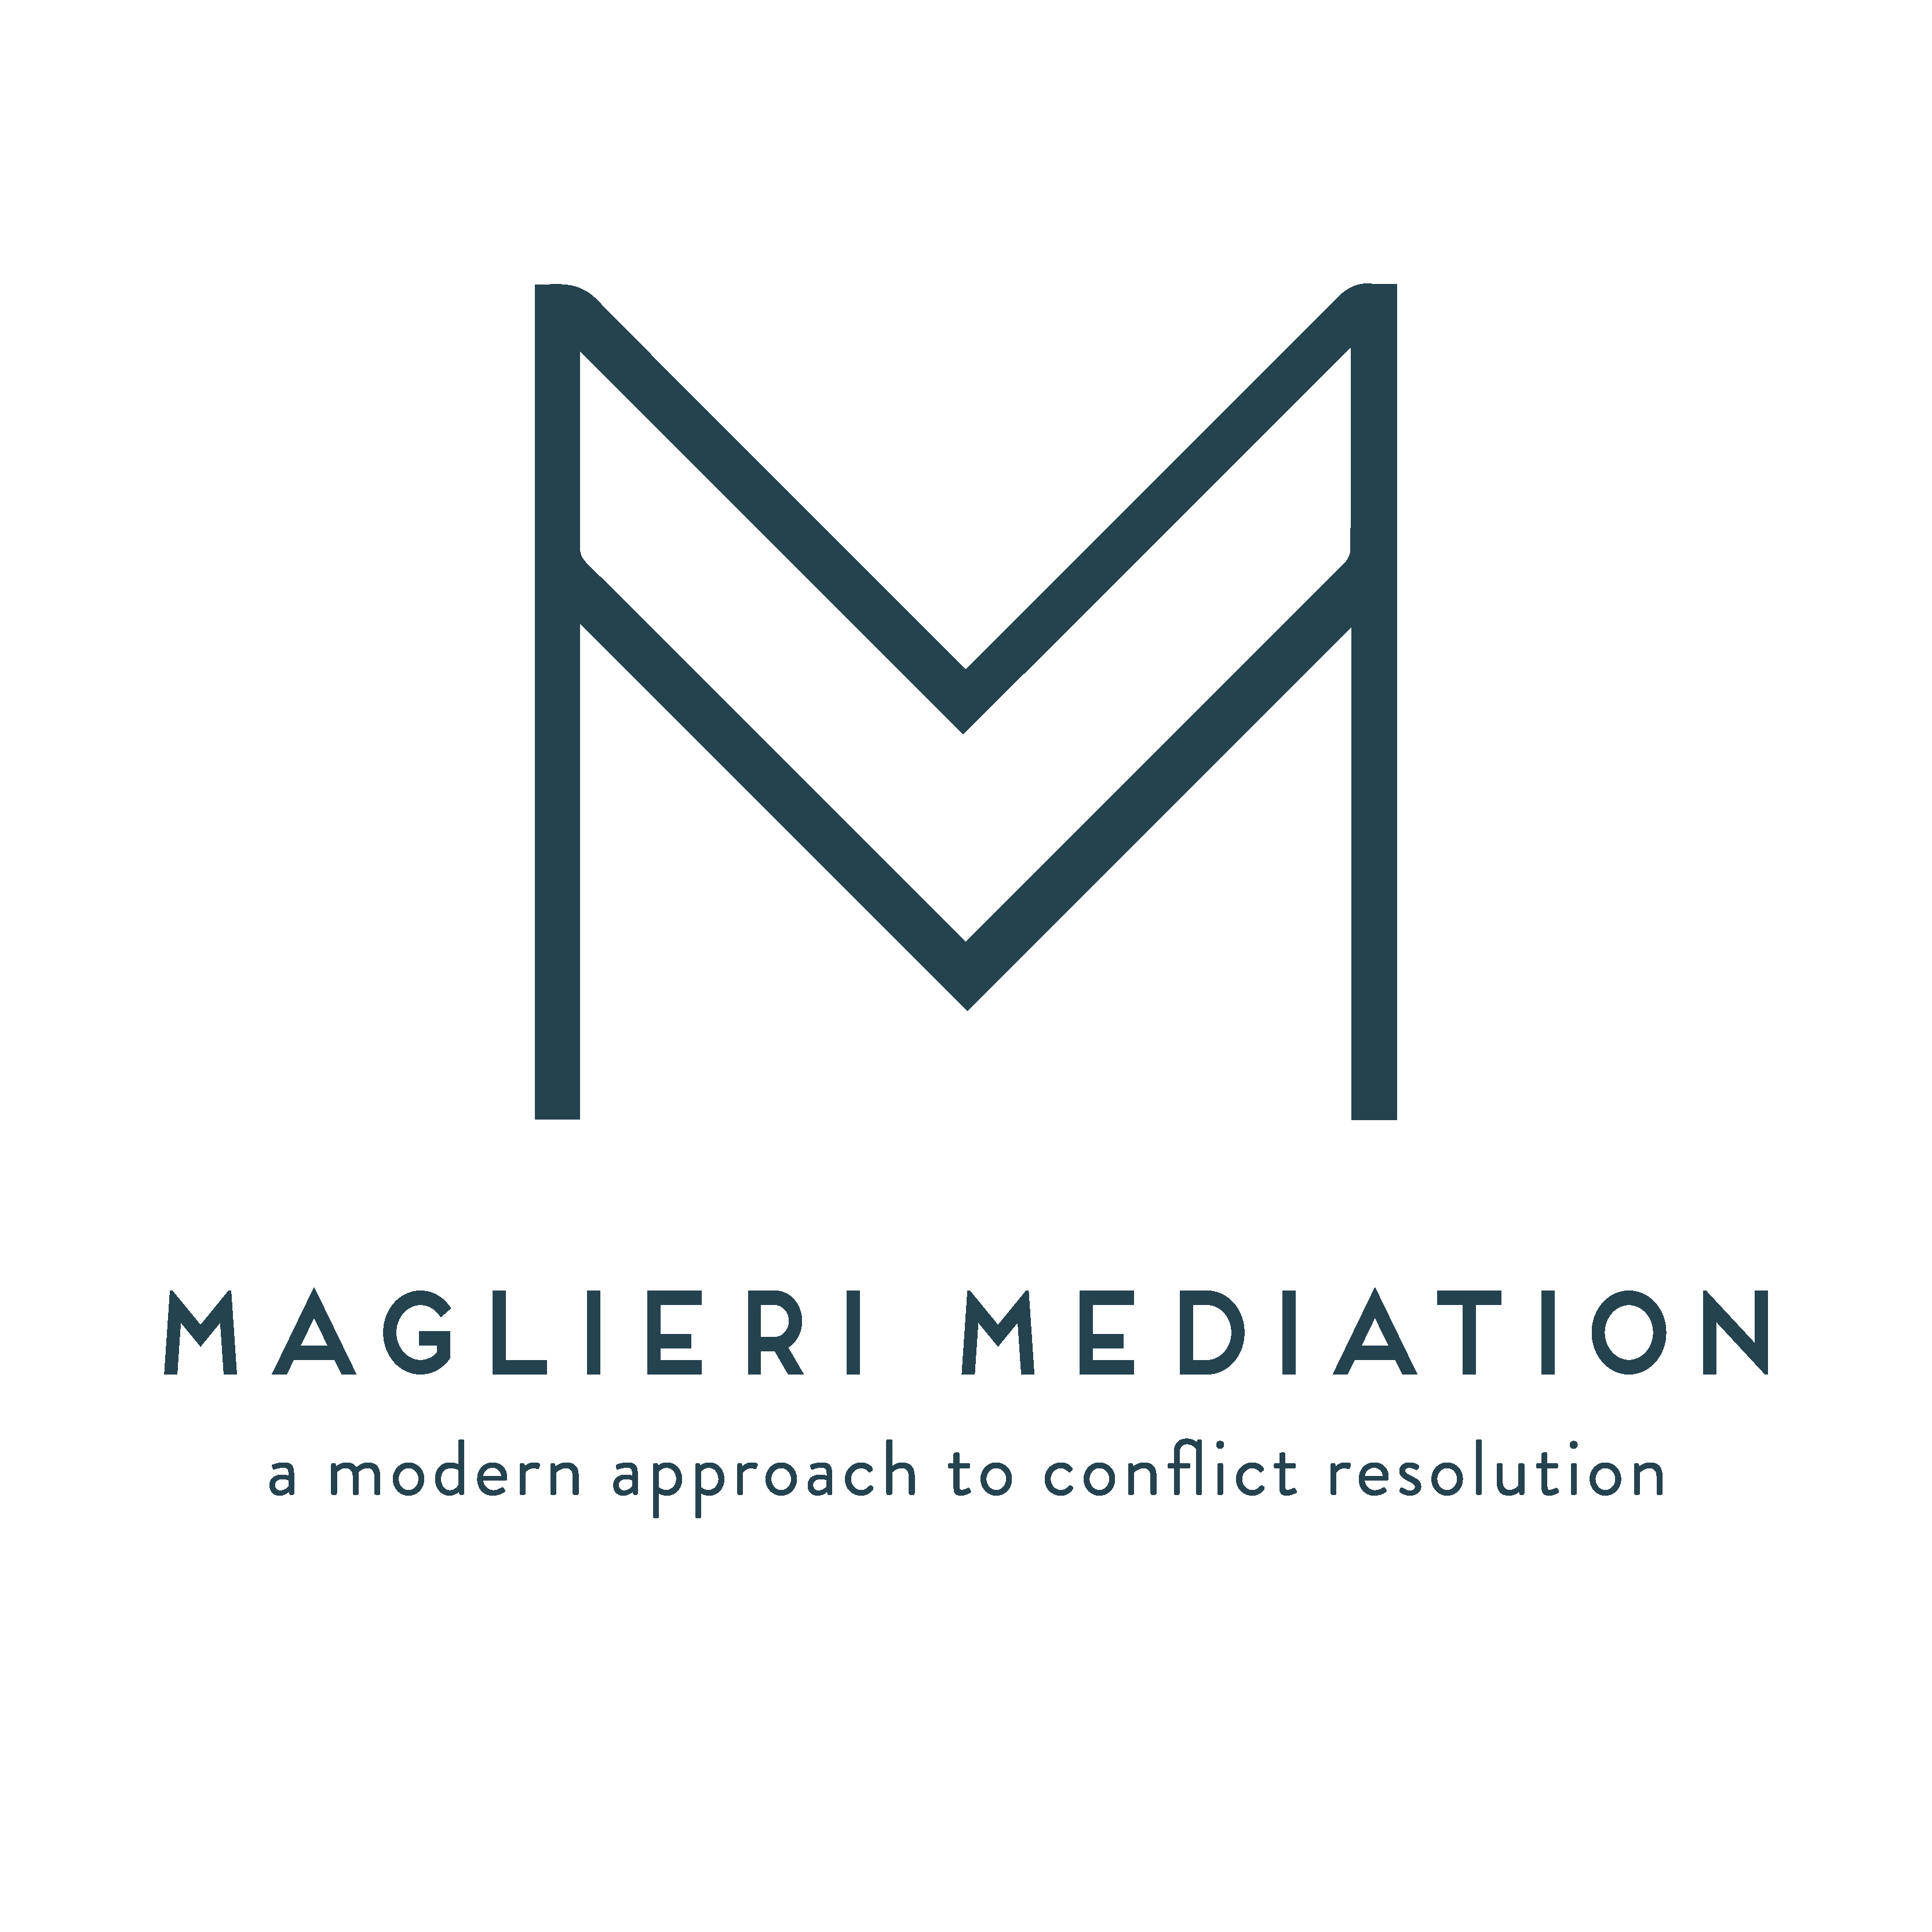 Thank you Maglieri Mediation